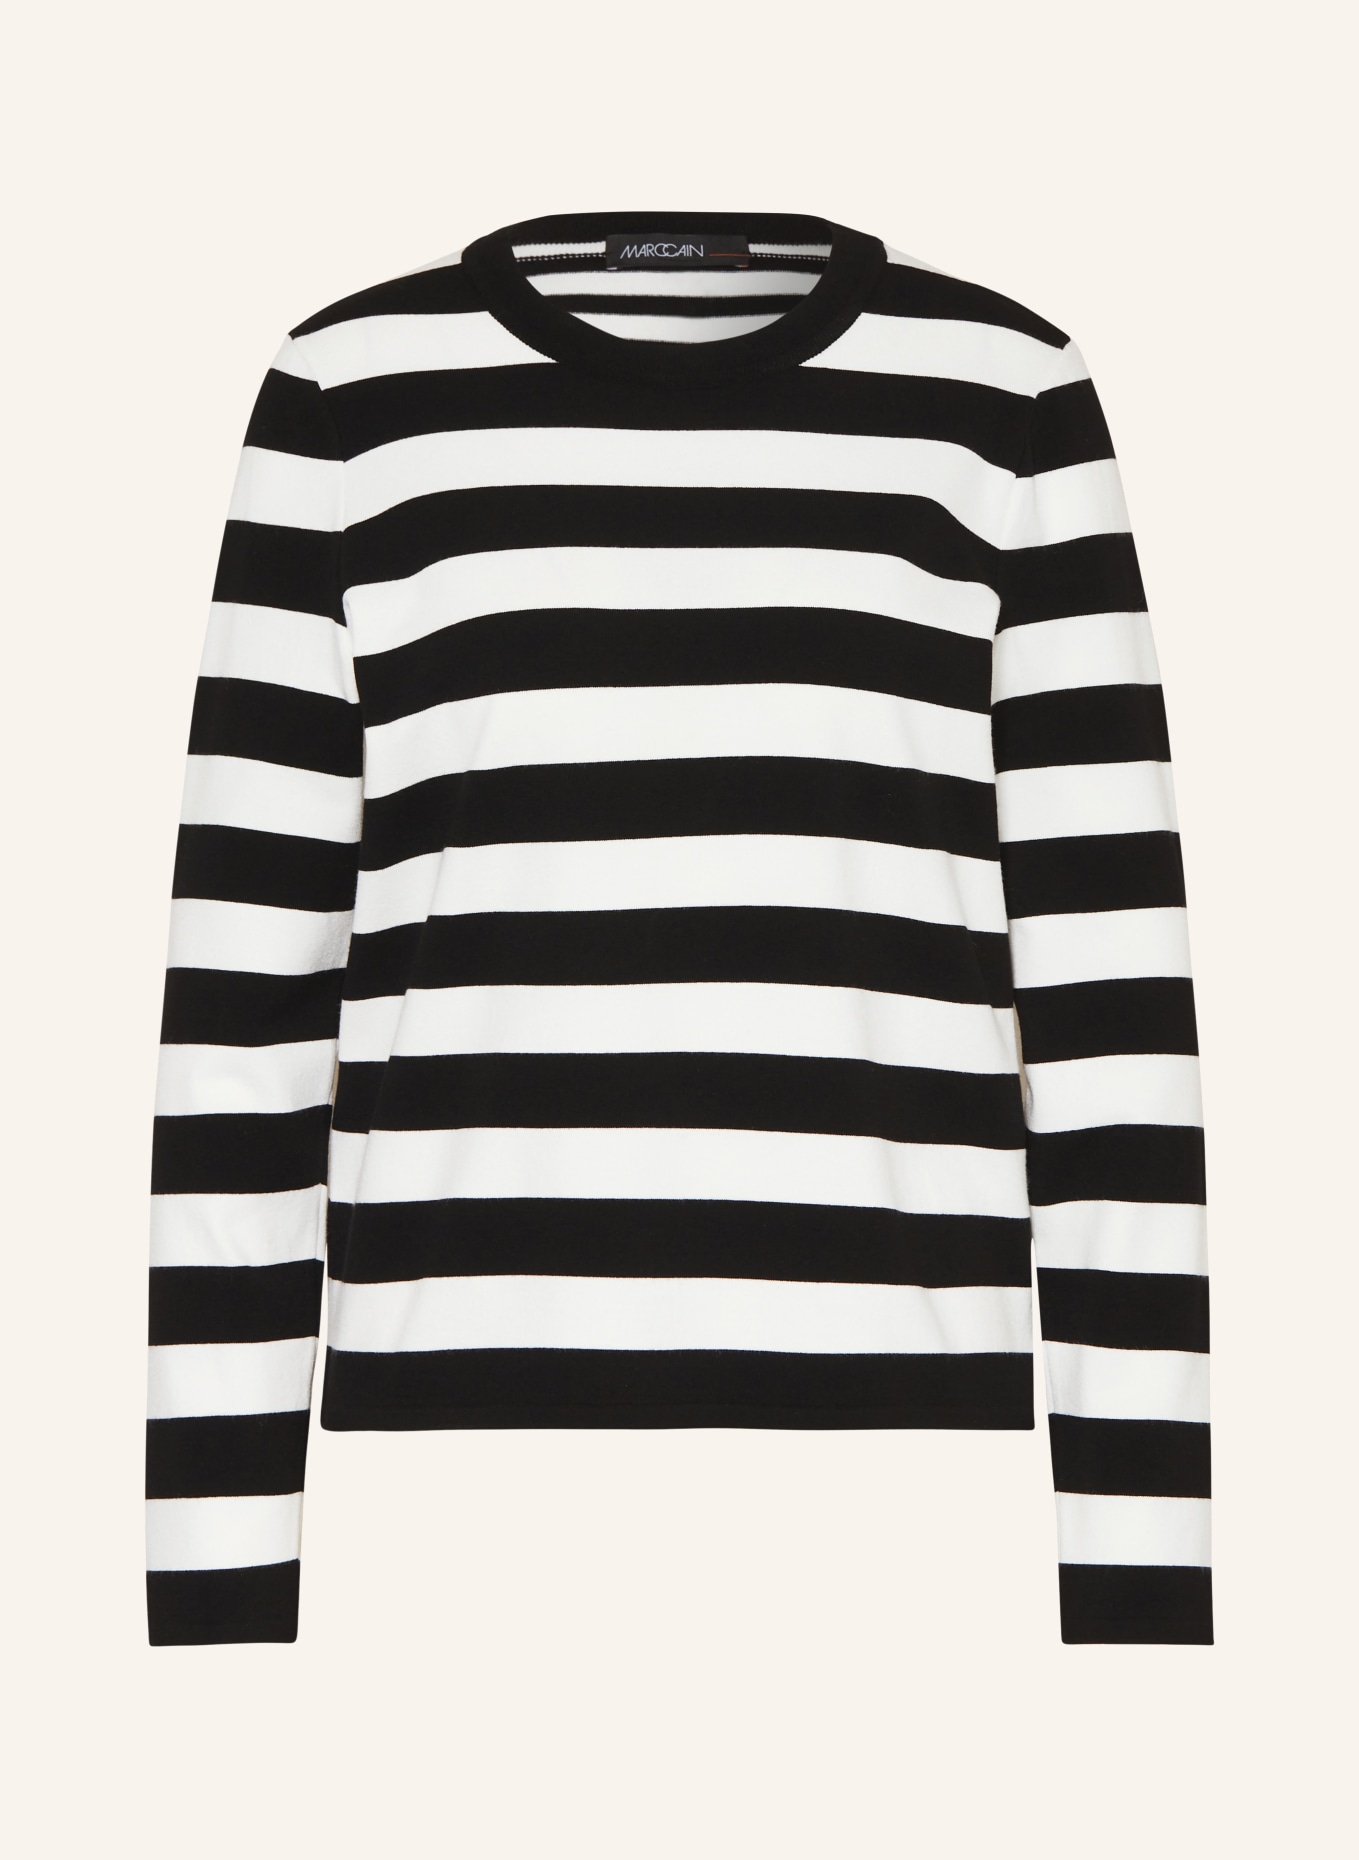 MARC CAIN Pullover, Farbe: 190 white and black (Bild 1)